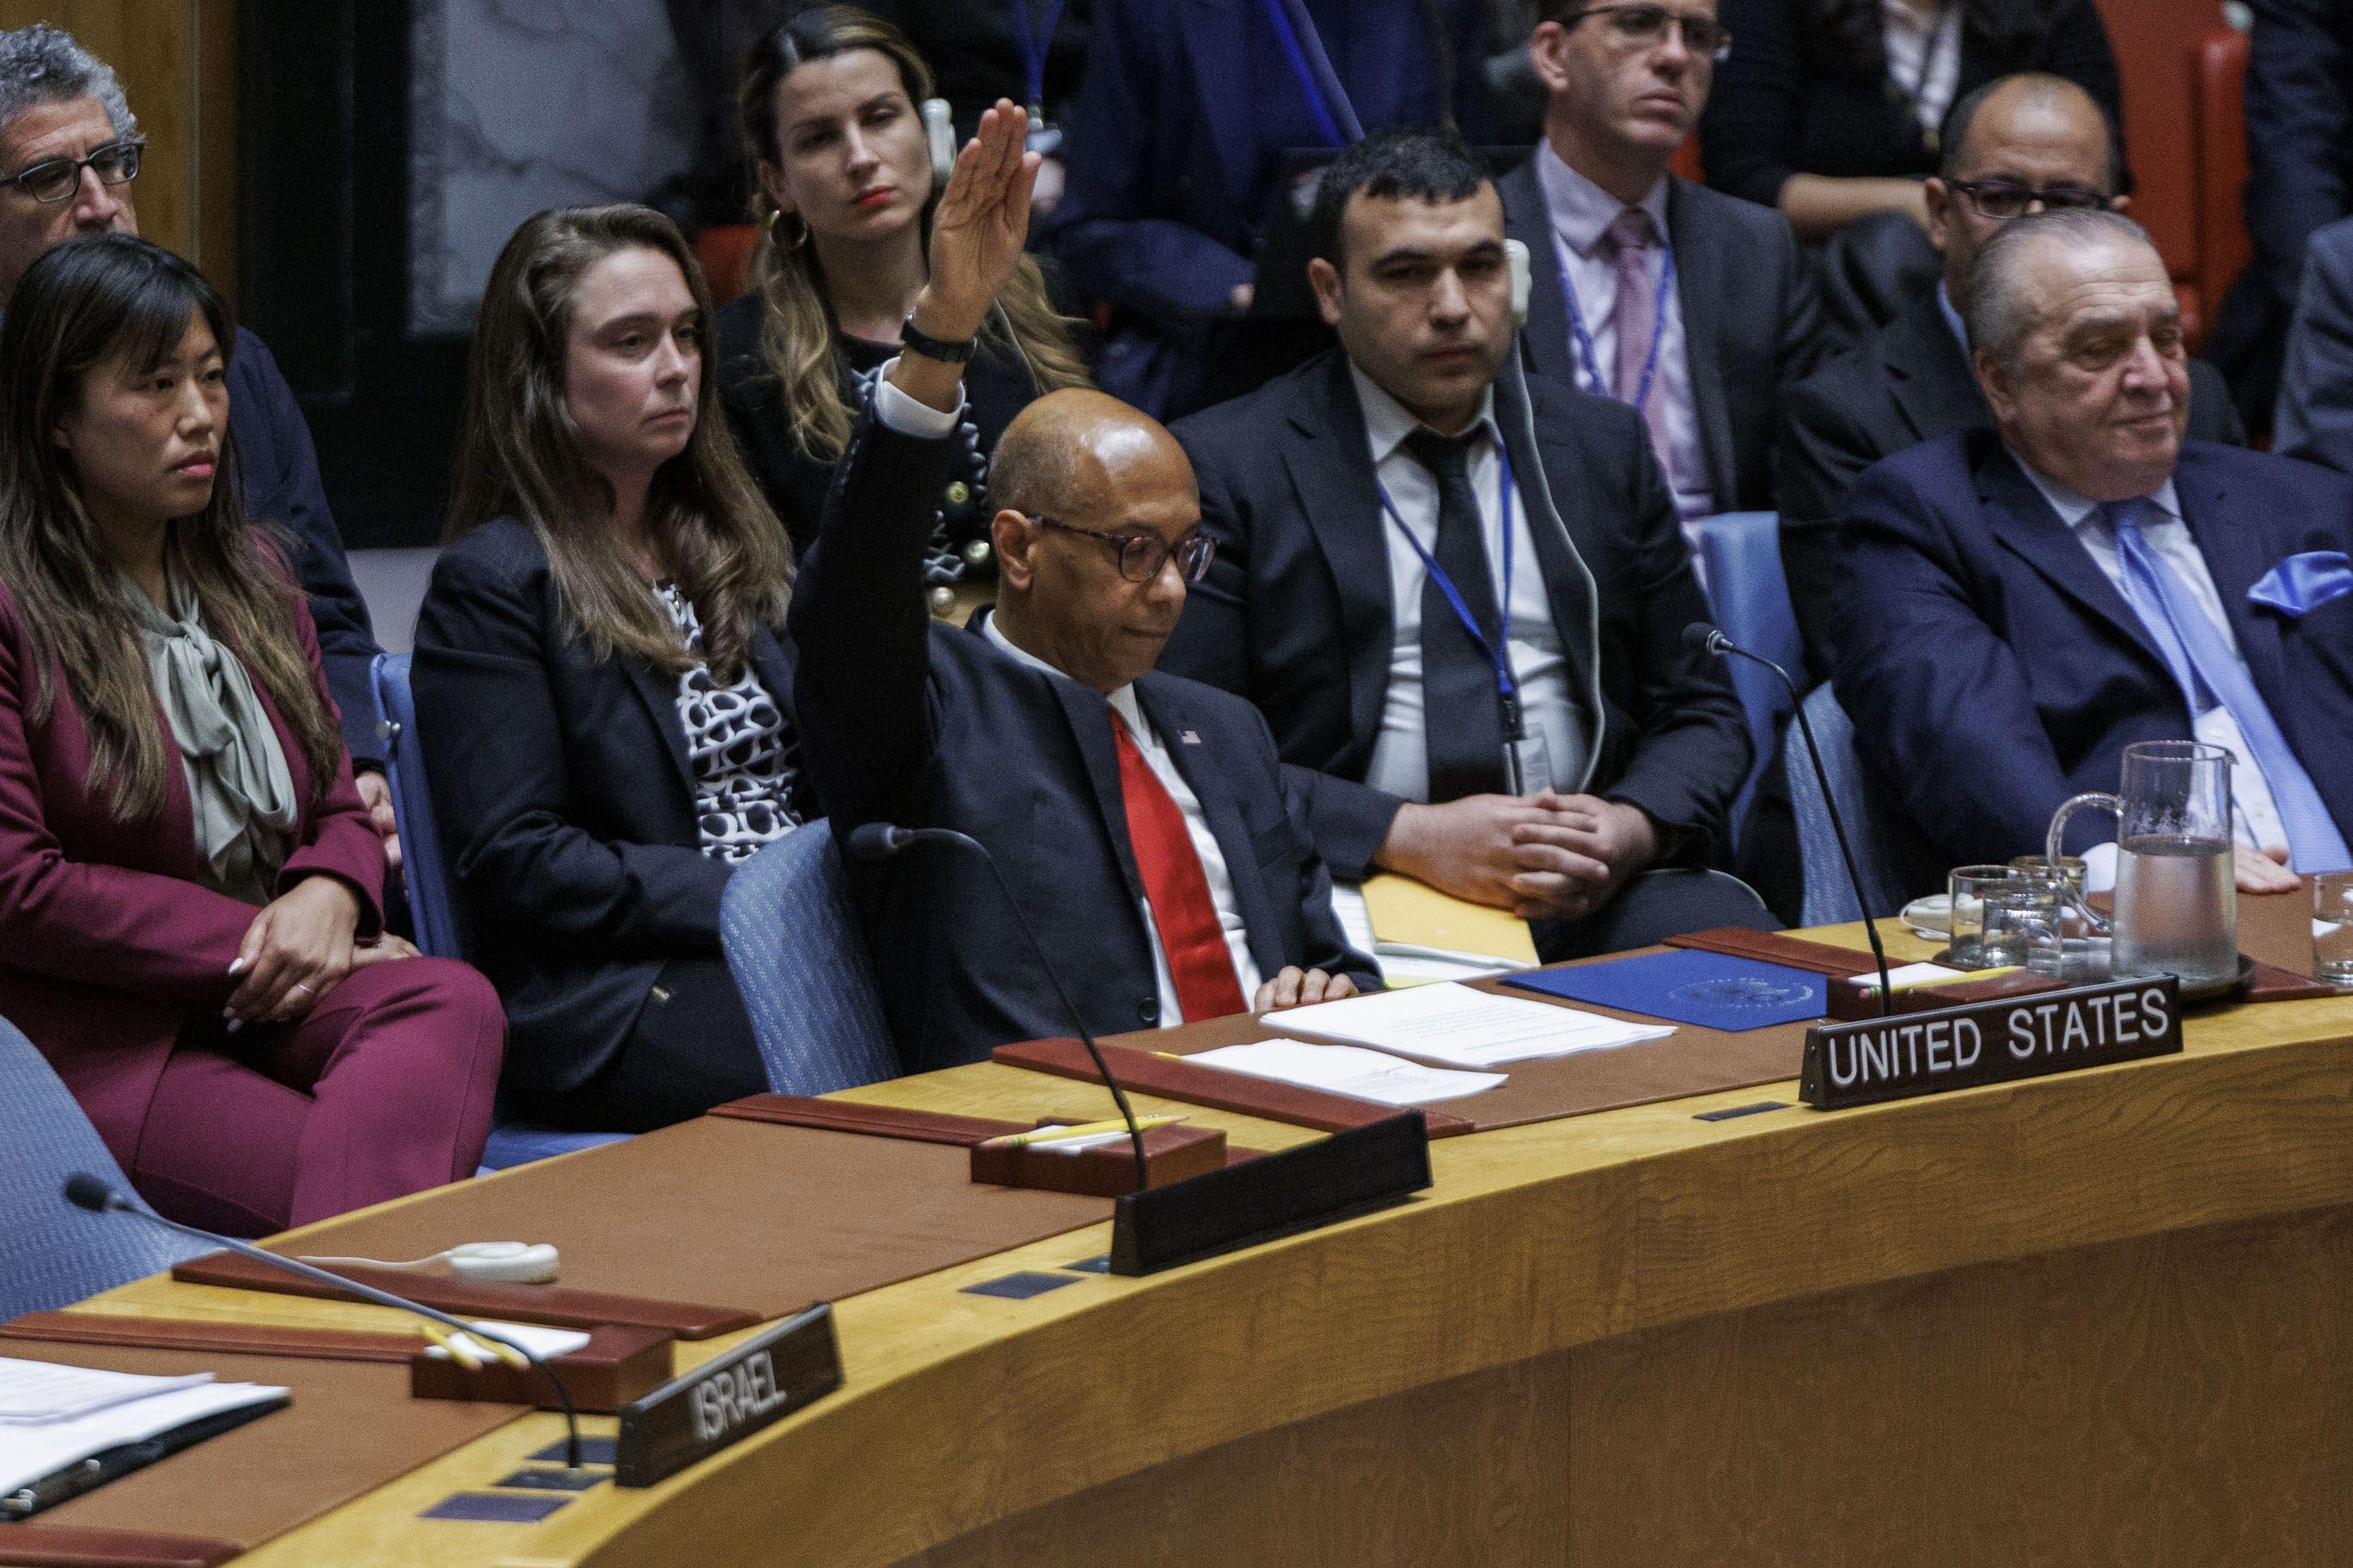 18일(현지시각) 미국 뉴욕 유엔 본부에서 열린 안보리 회의에서 로버트 우드 유엔주재 미국 대사가 손을 들어 팔레스타인의 유엔 회원국 가입에 반대한다는 의사를 표시하고 있다. 미국은 거부권을 사용해 요청을 거부했다.